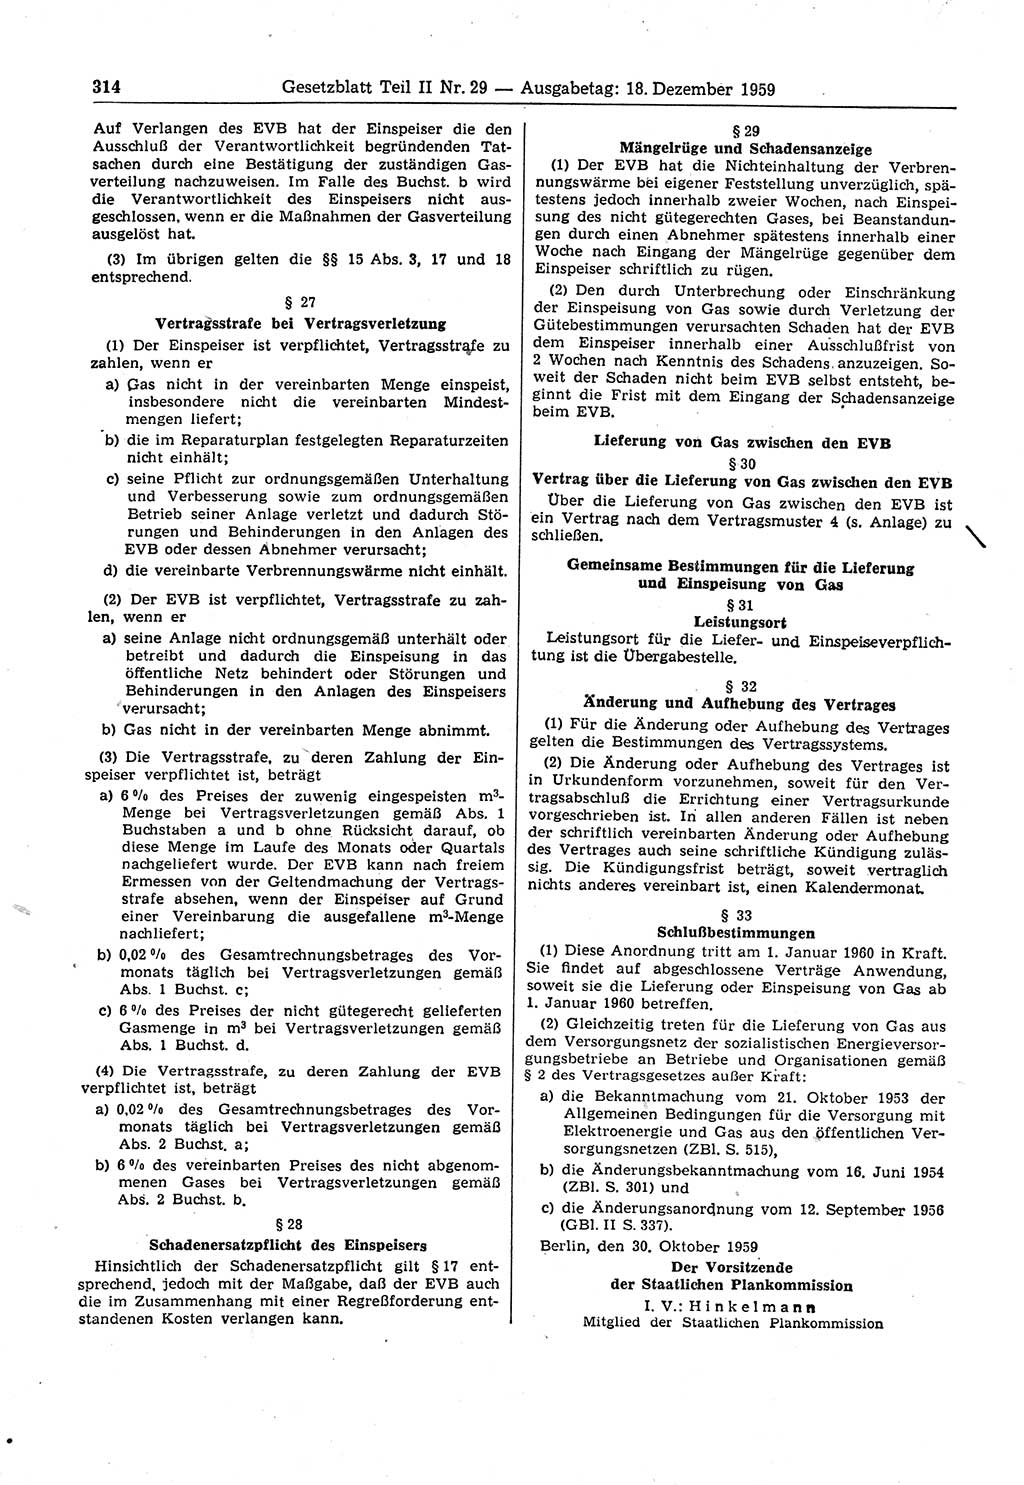 Gesetzblatt (GBl.) der Deutschen Demokratischen Republik (DDR) Teil ⅠⅠ 1959, Seite 314 (GBl. DDR ⅠⅠ 1959, S. 314)